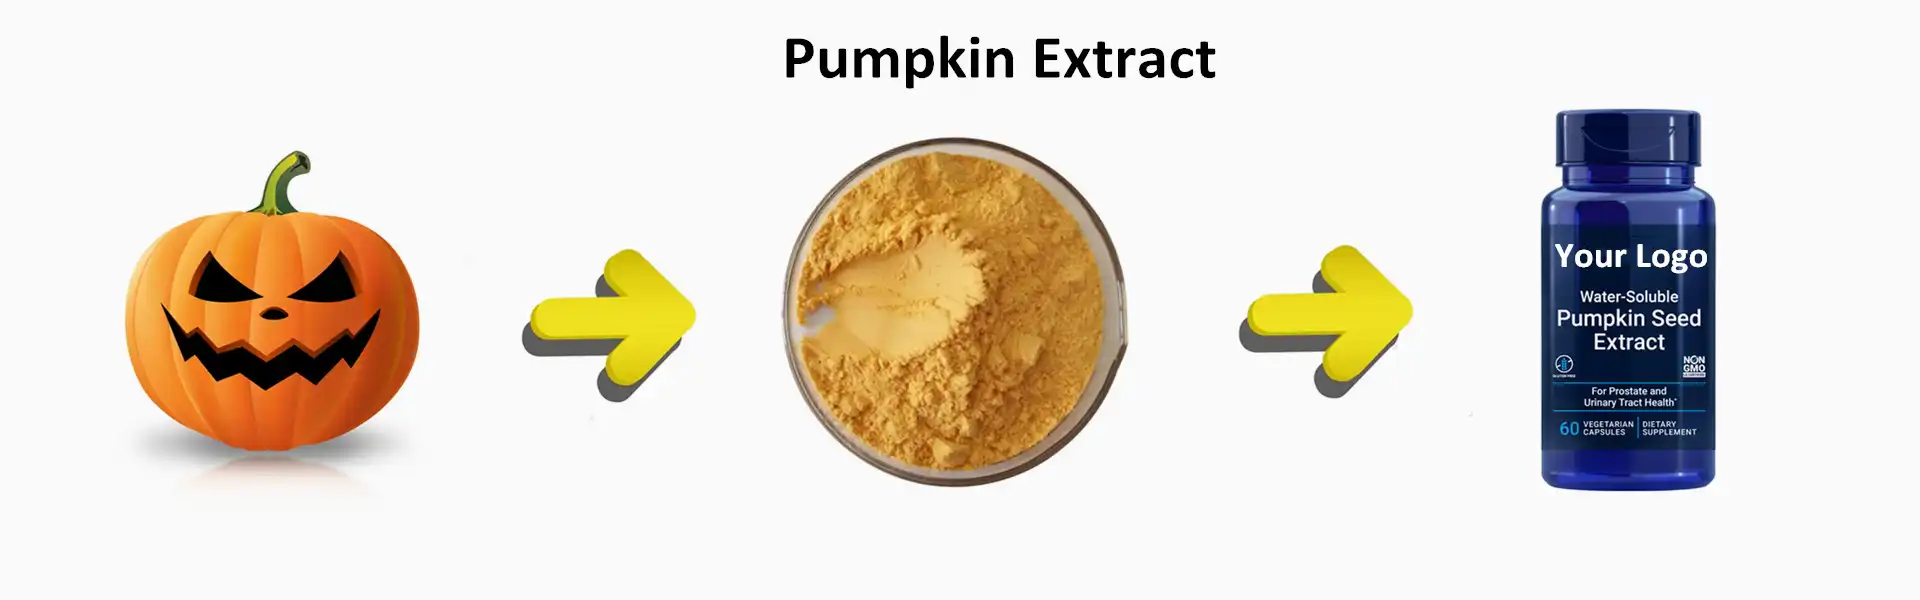 pumpkin extract